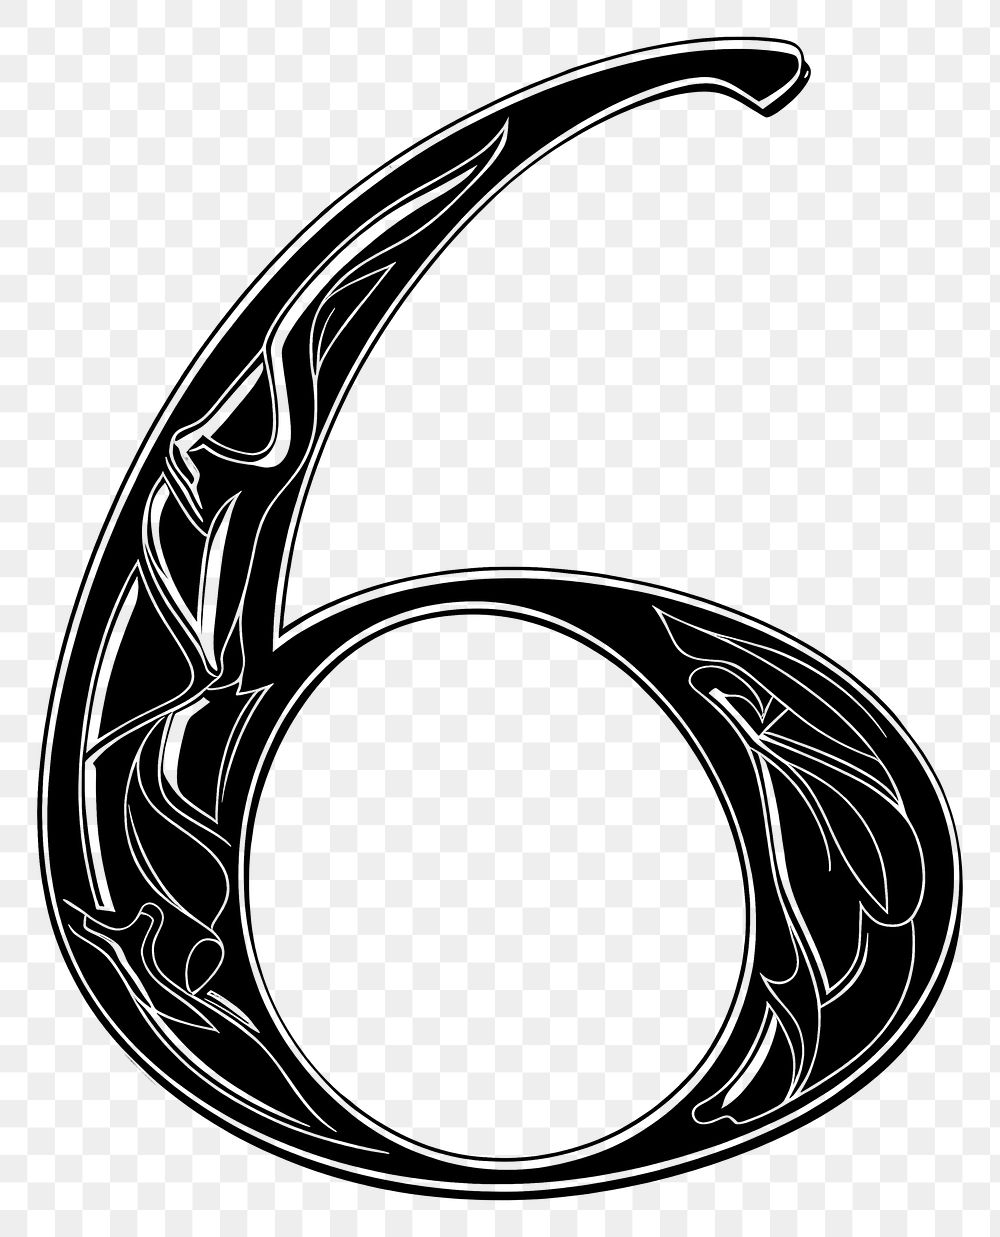 PNG Number 6 alphabet number symbol text.